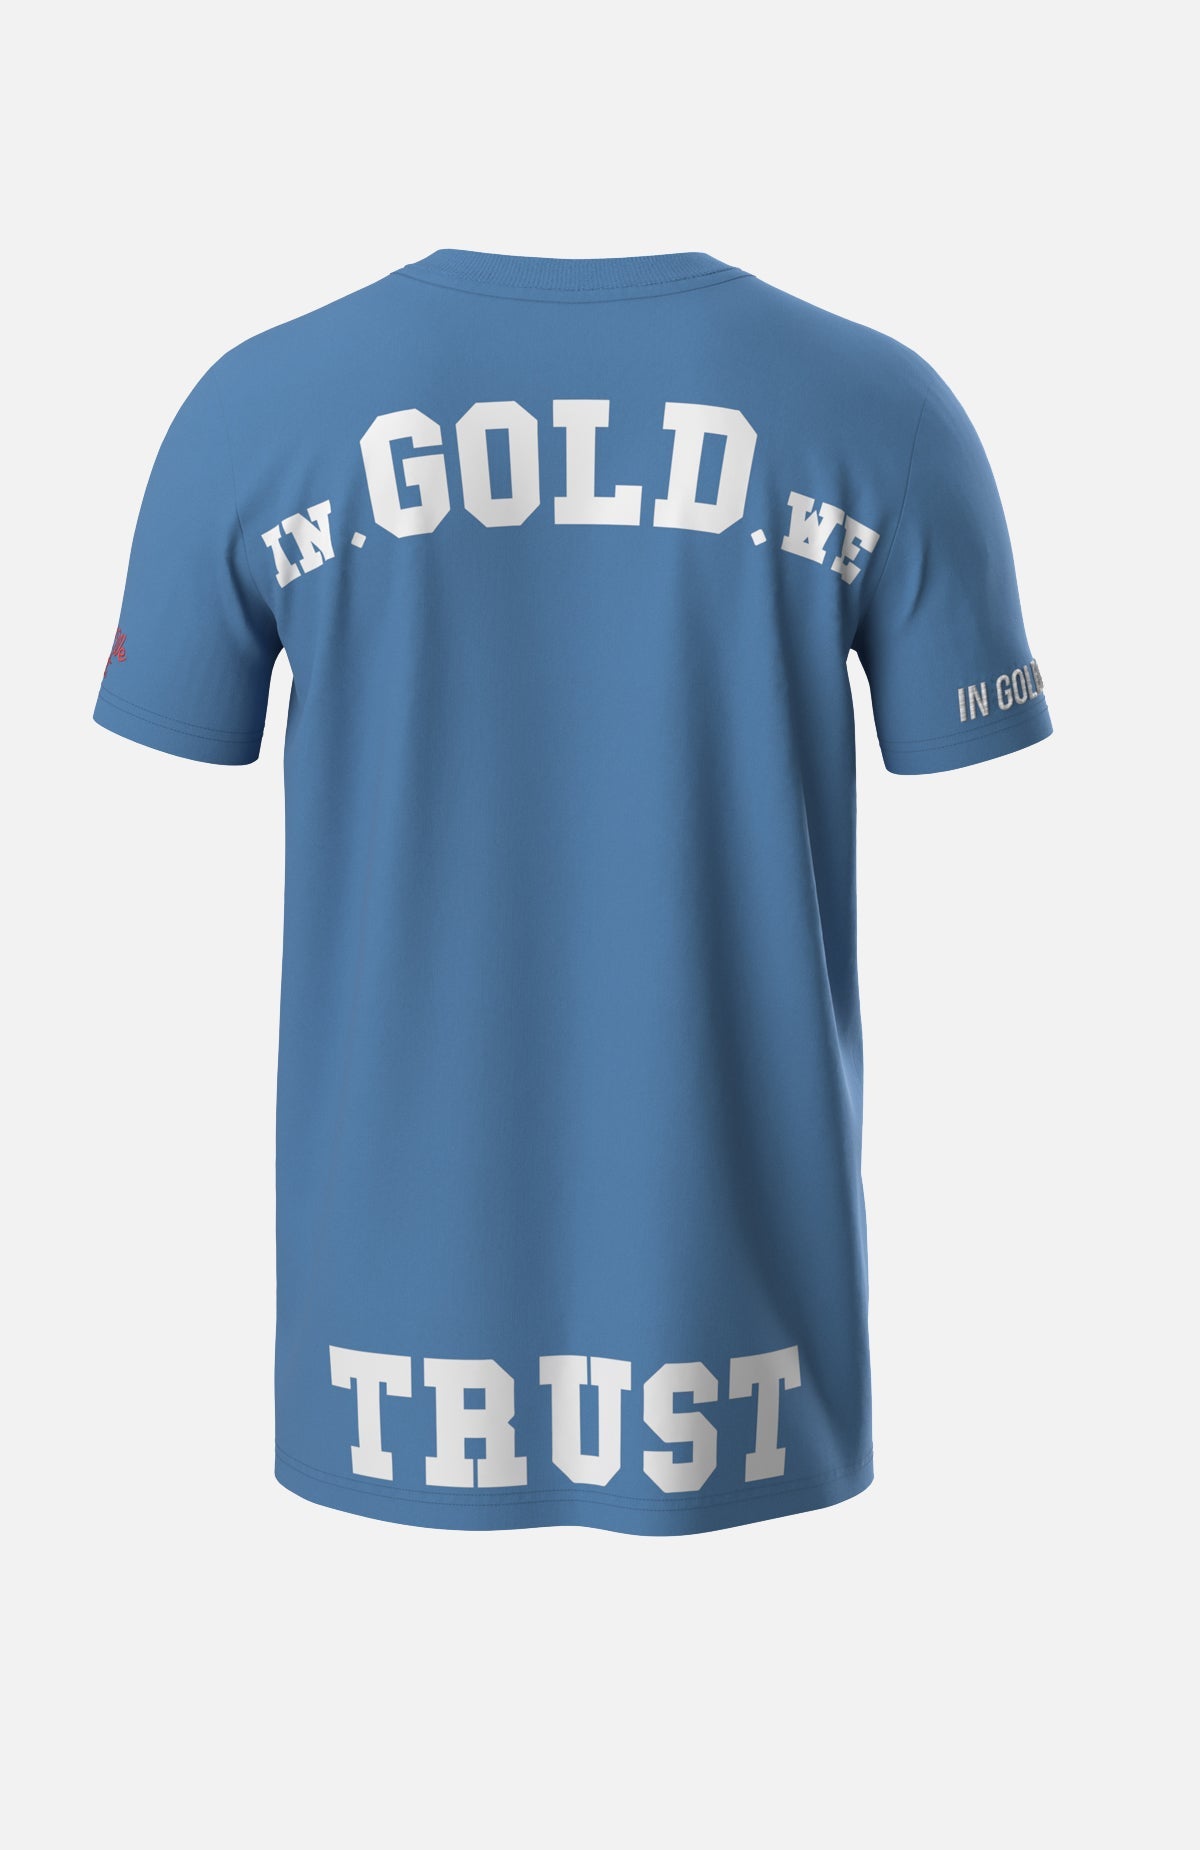 In Gold We Trust Junior T-shirt The Pusha Pacific Coast